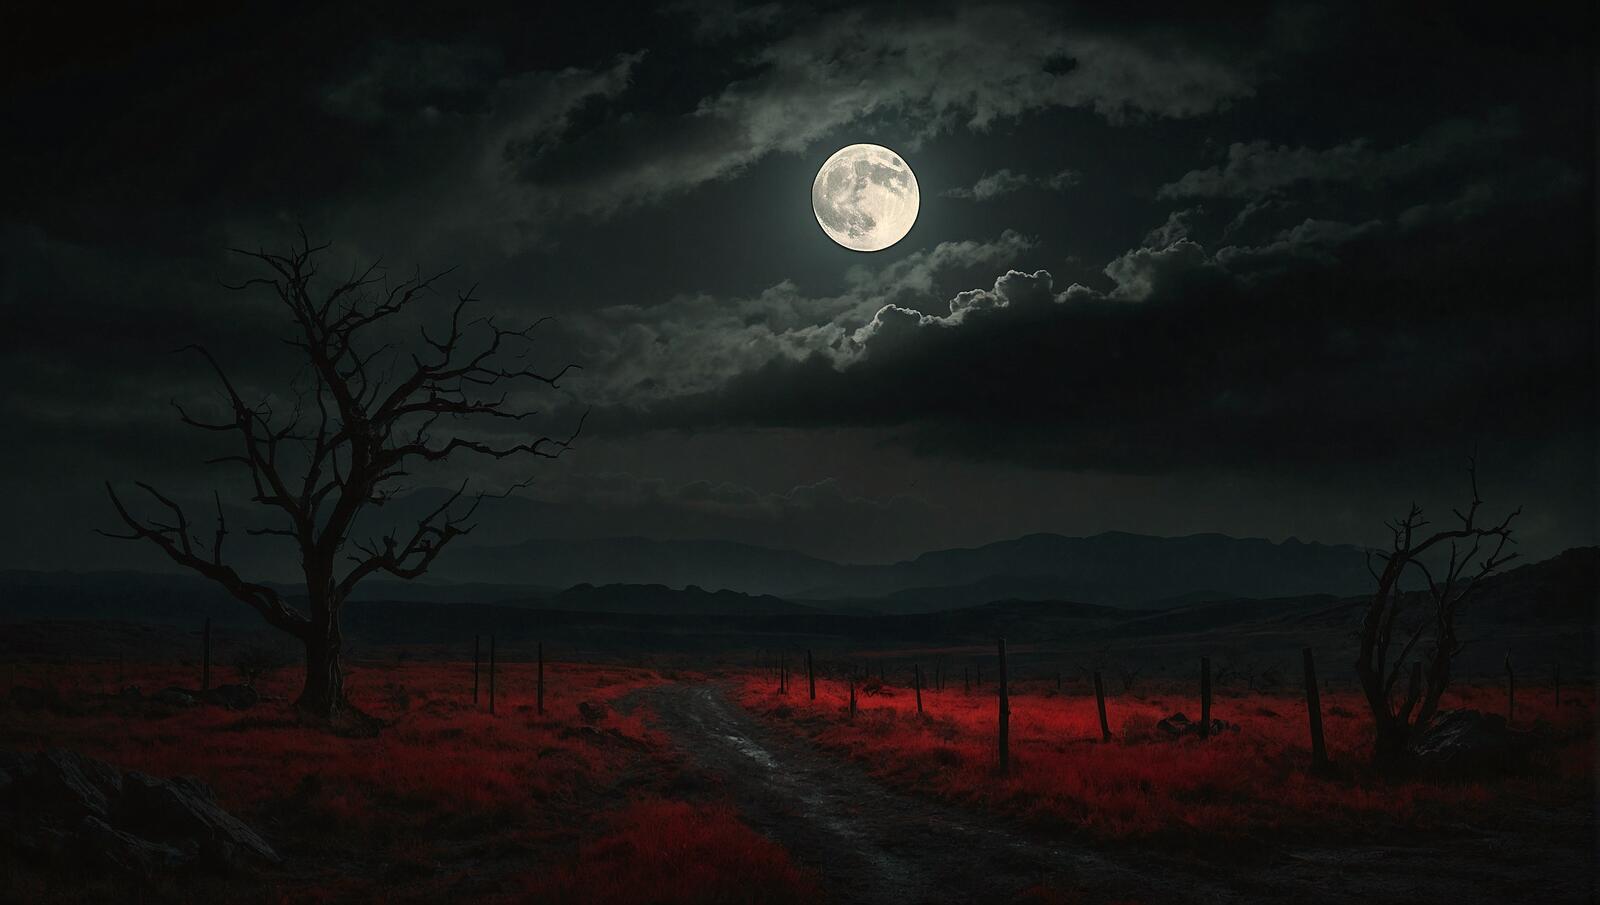 Бесплатное фото Картина маслом, изображающая ночную дорогу с луной на заднем плане